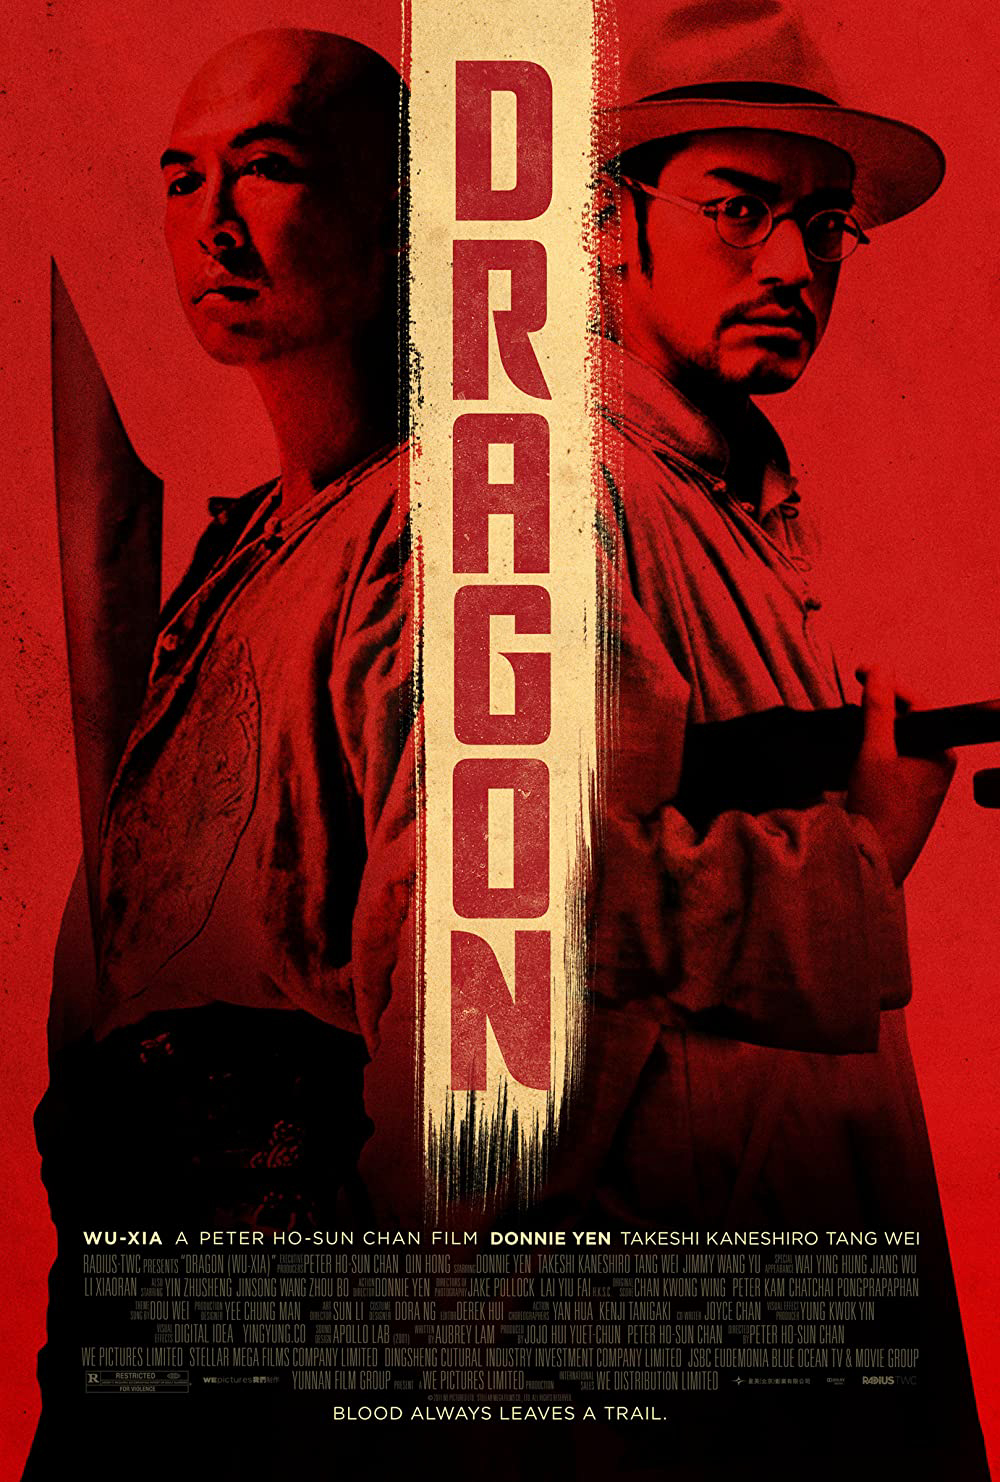 Võ hiệp (Dragon) [2011]